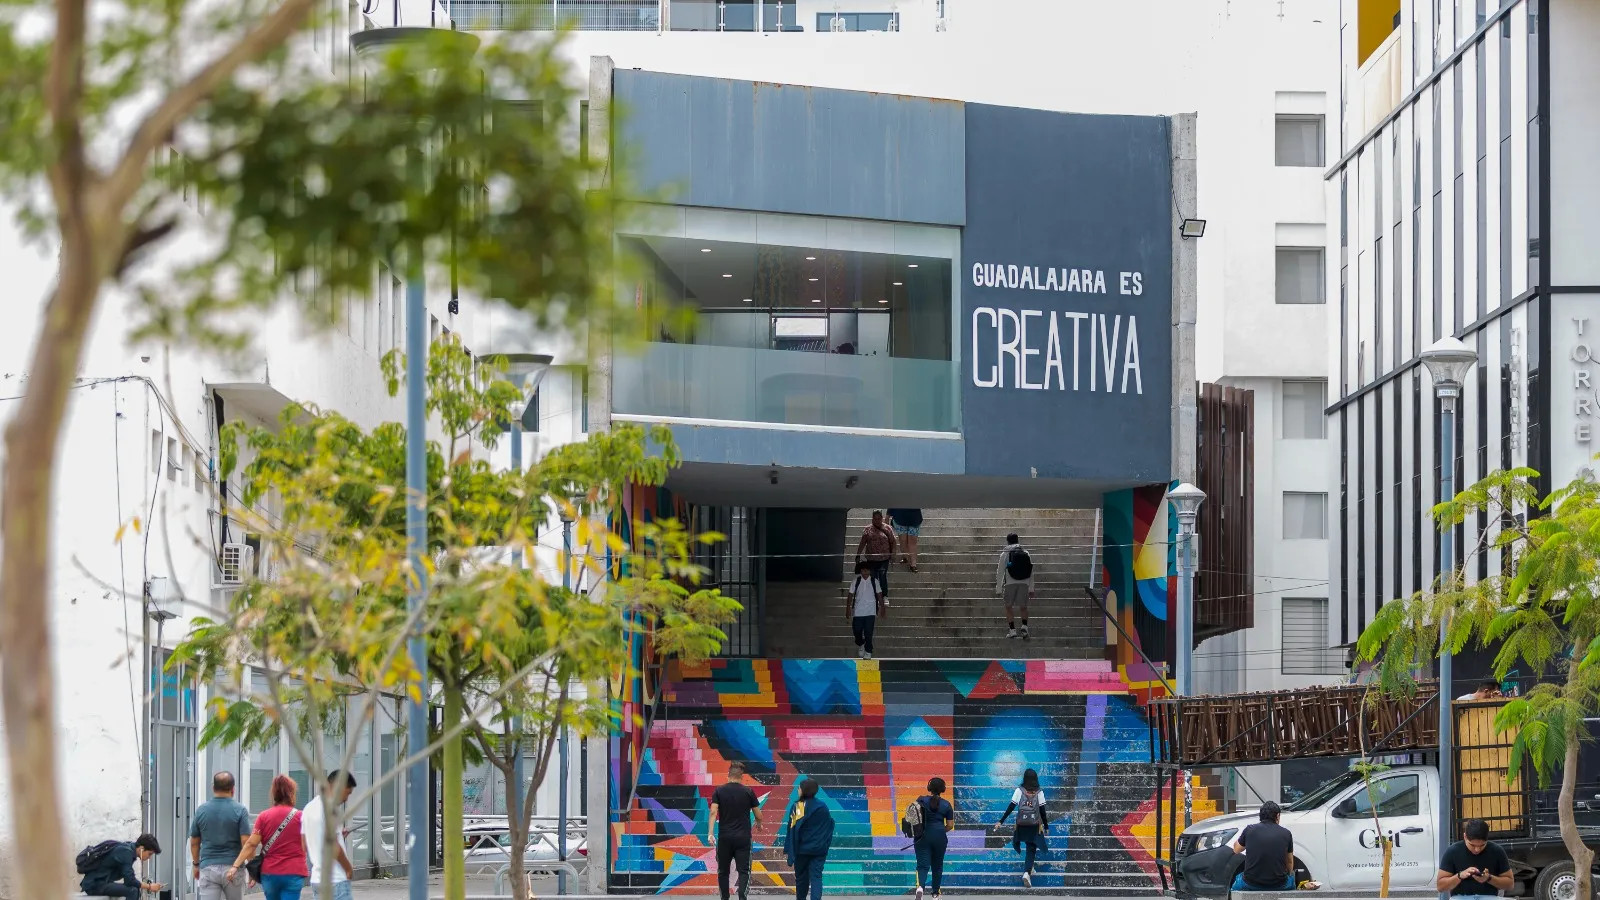 Guadalajara Joga Dinheiro Em Criativos E Espera Um Boom Econômico